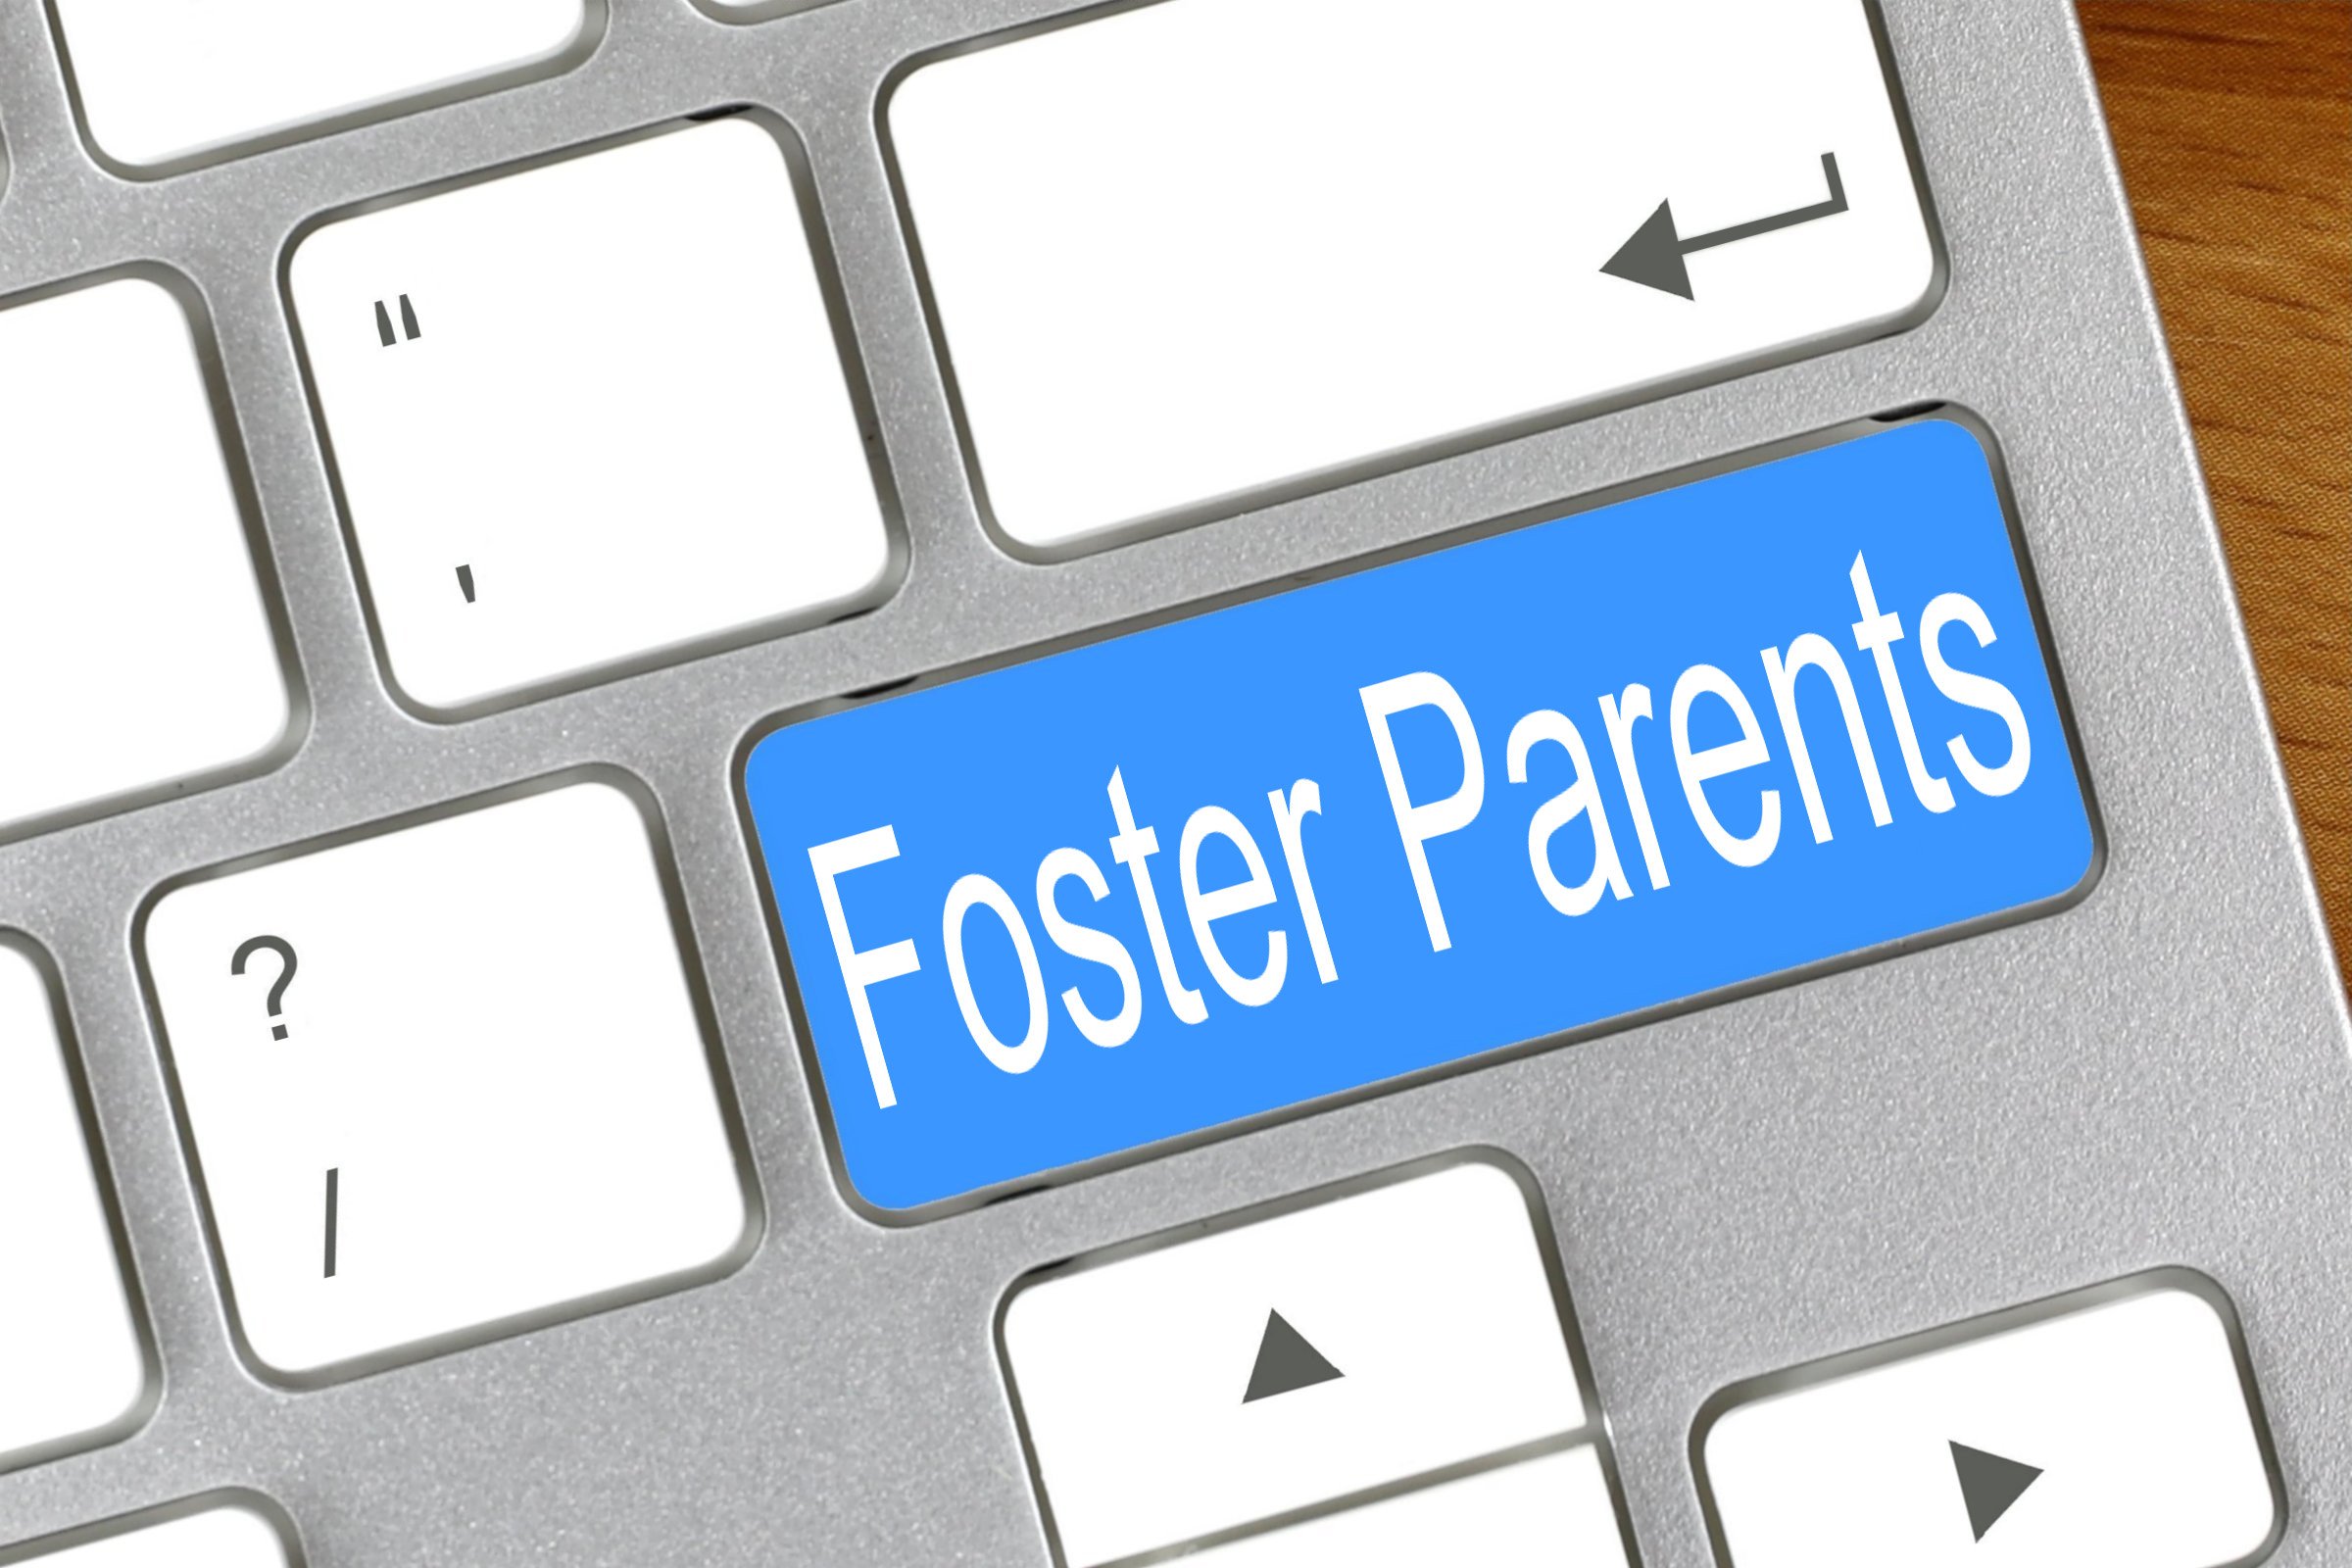 foster parents